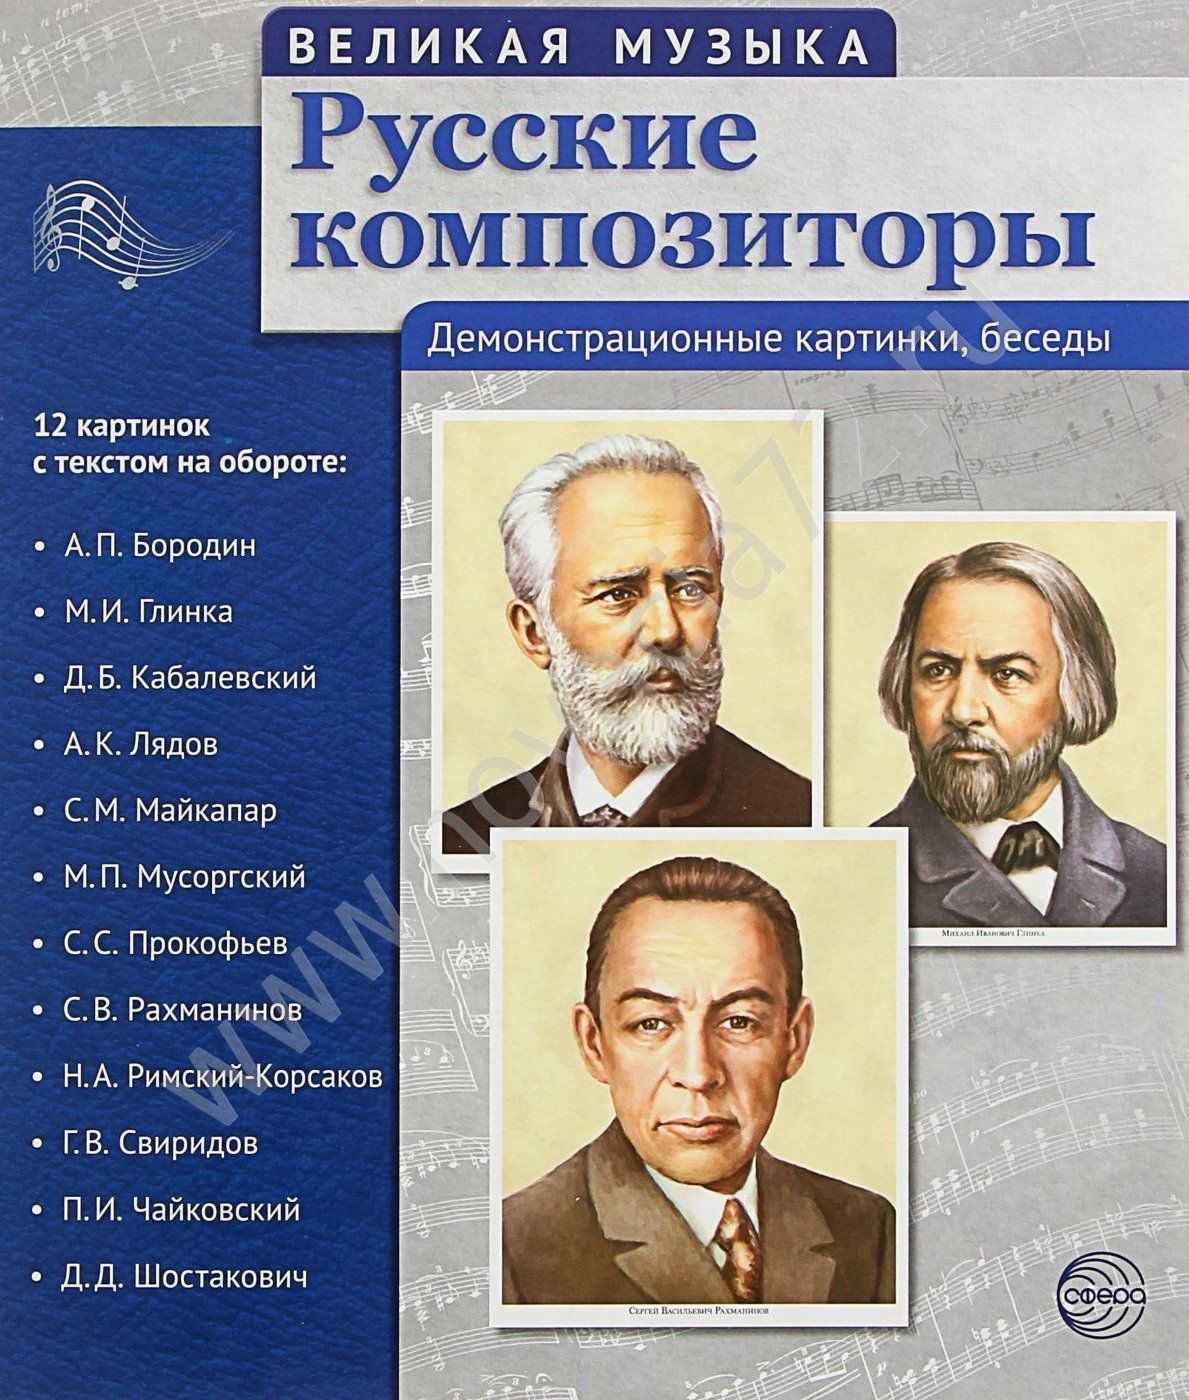 Русские композиторы классической музыки 19 века: список произведений, биография